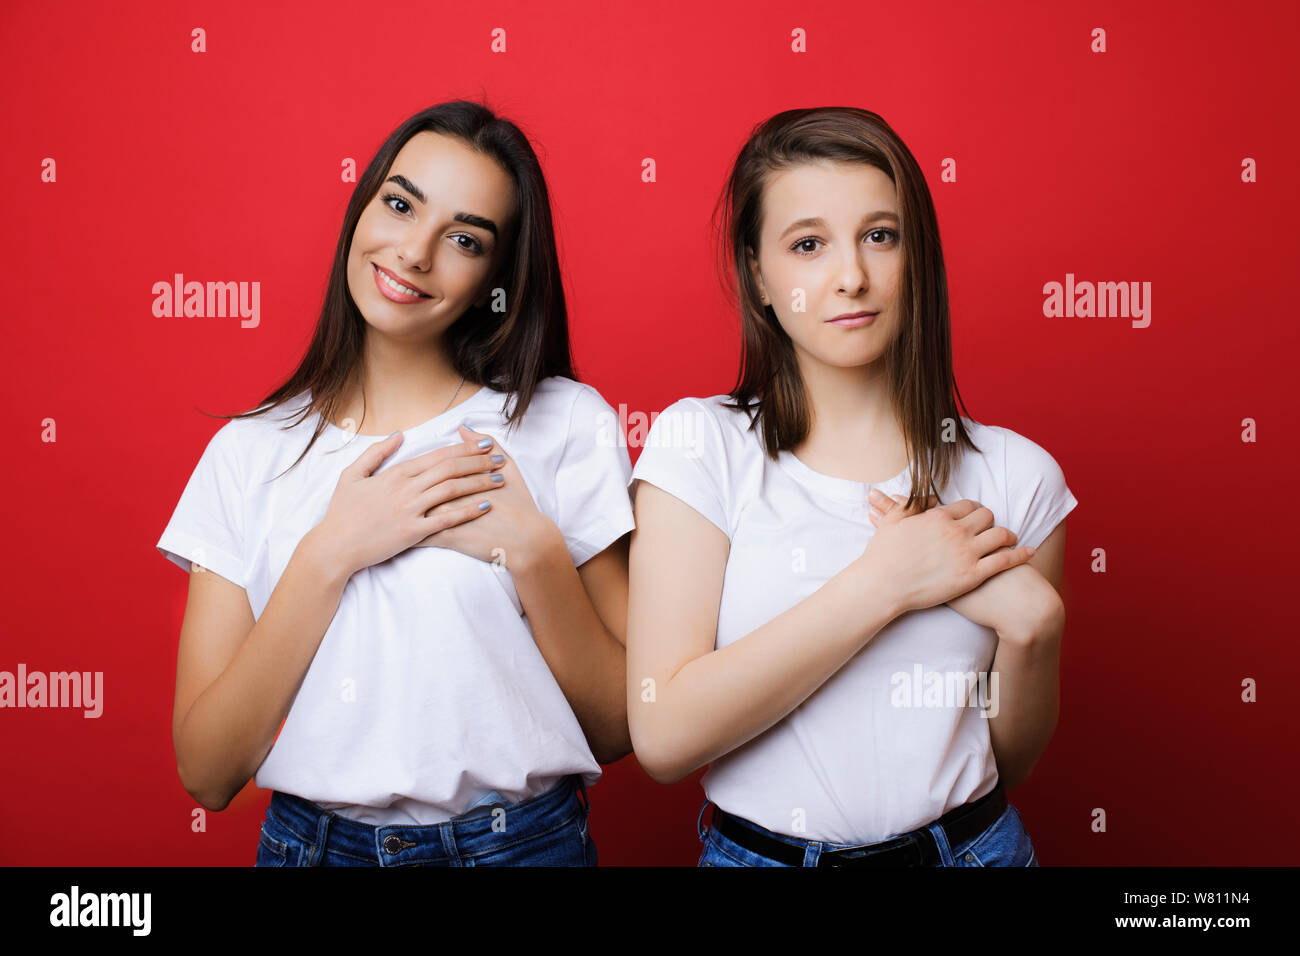 Deux beaux portrait jeune fille vêtue d'une chemise blanche à la recherche en appareil photo avec un visage émotionnel avec les mains de leur cœur contre un mur rouge. Banque D'Images